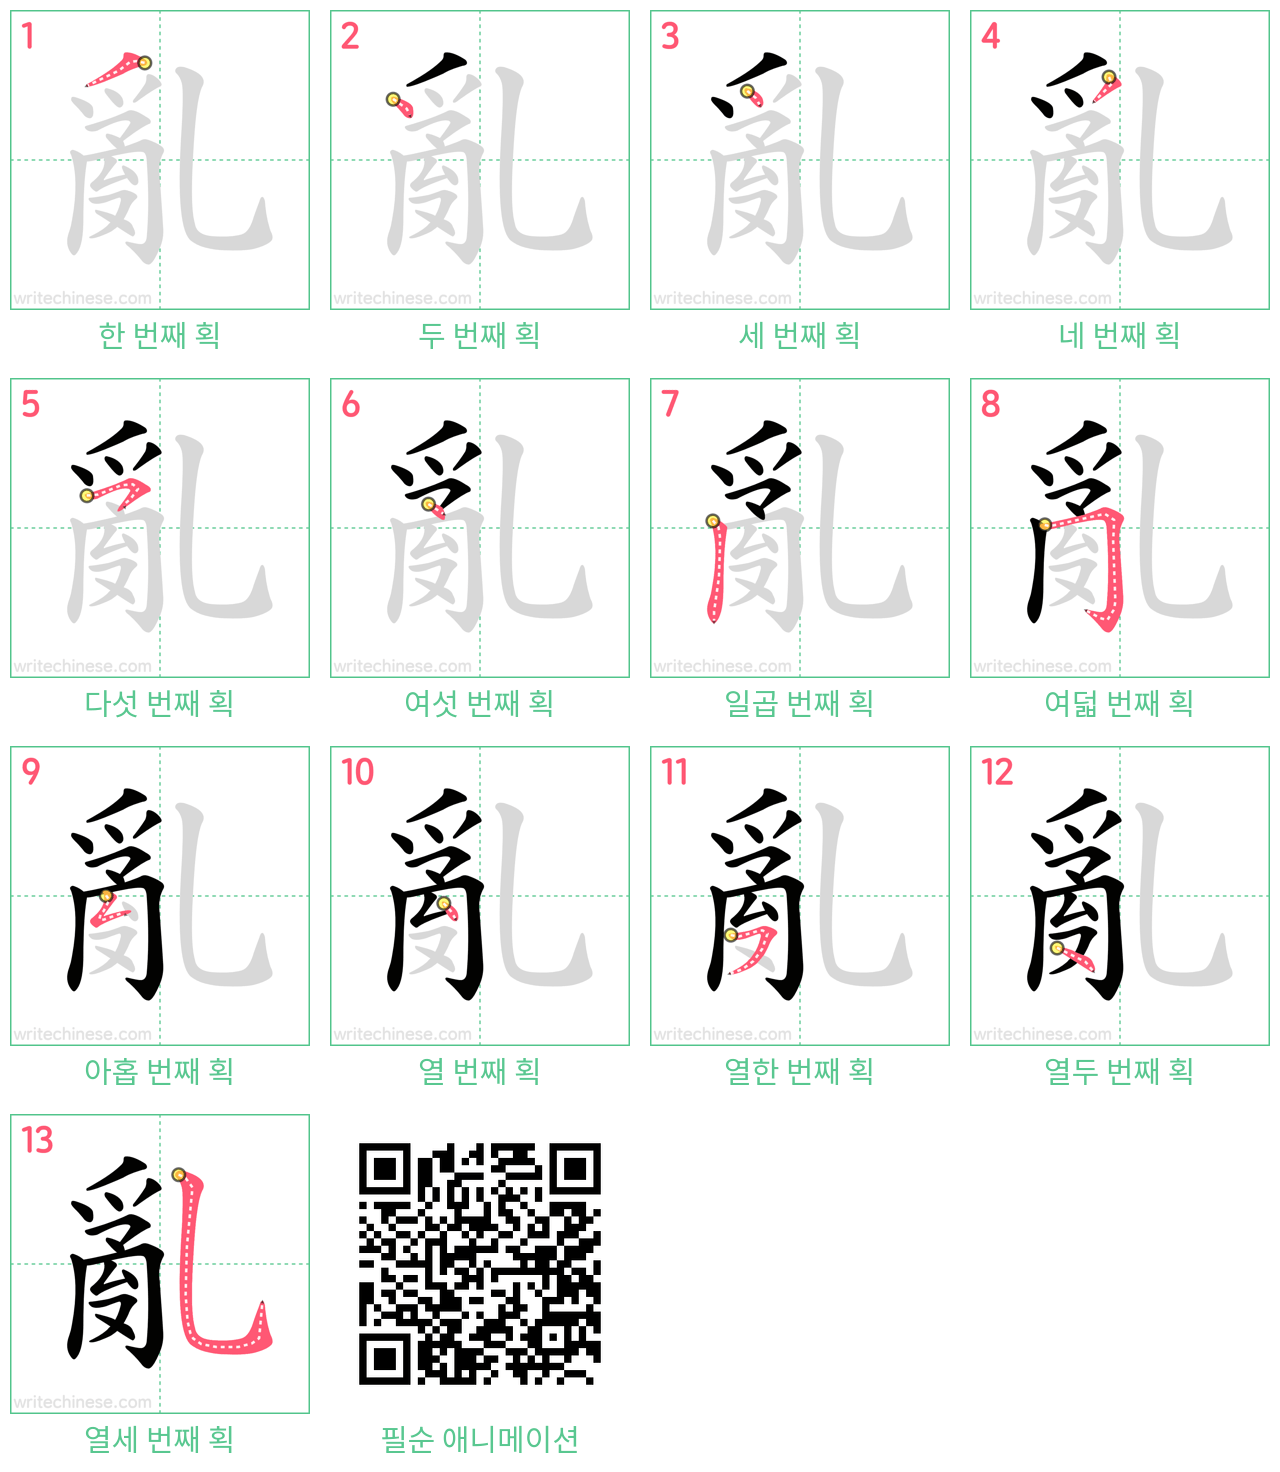 亂 step-by-step stroke order diagrams